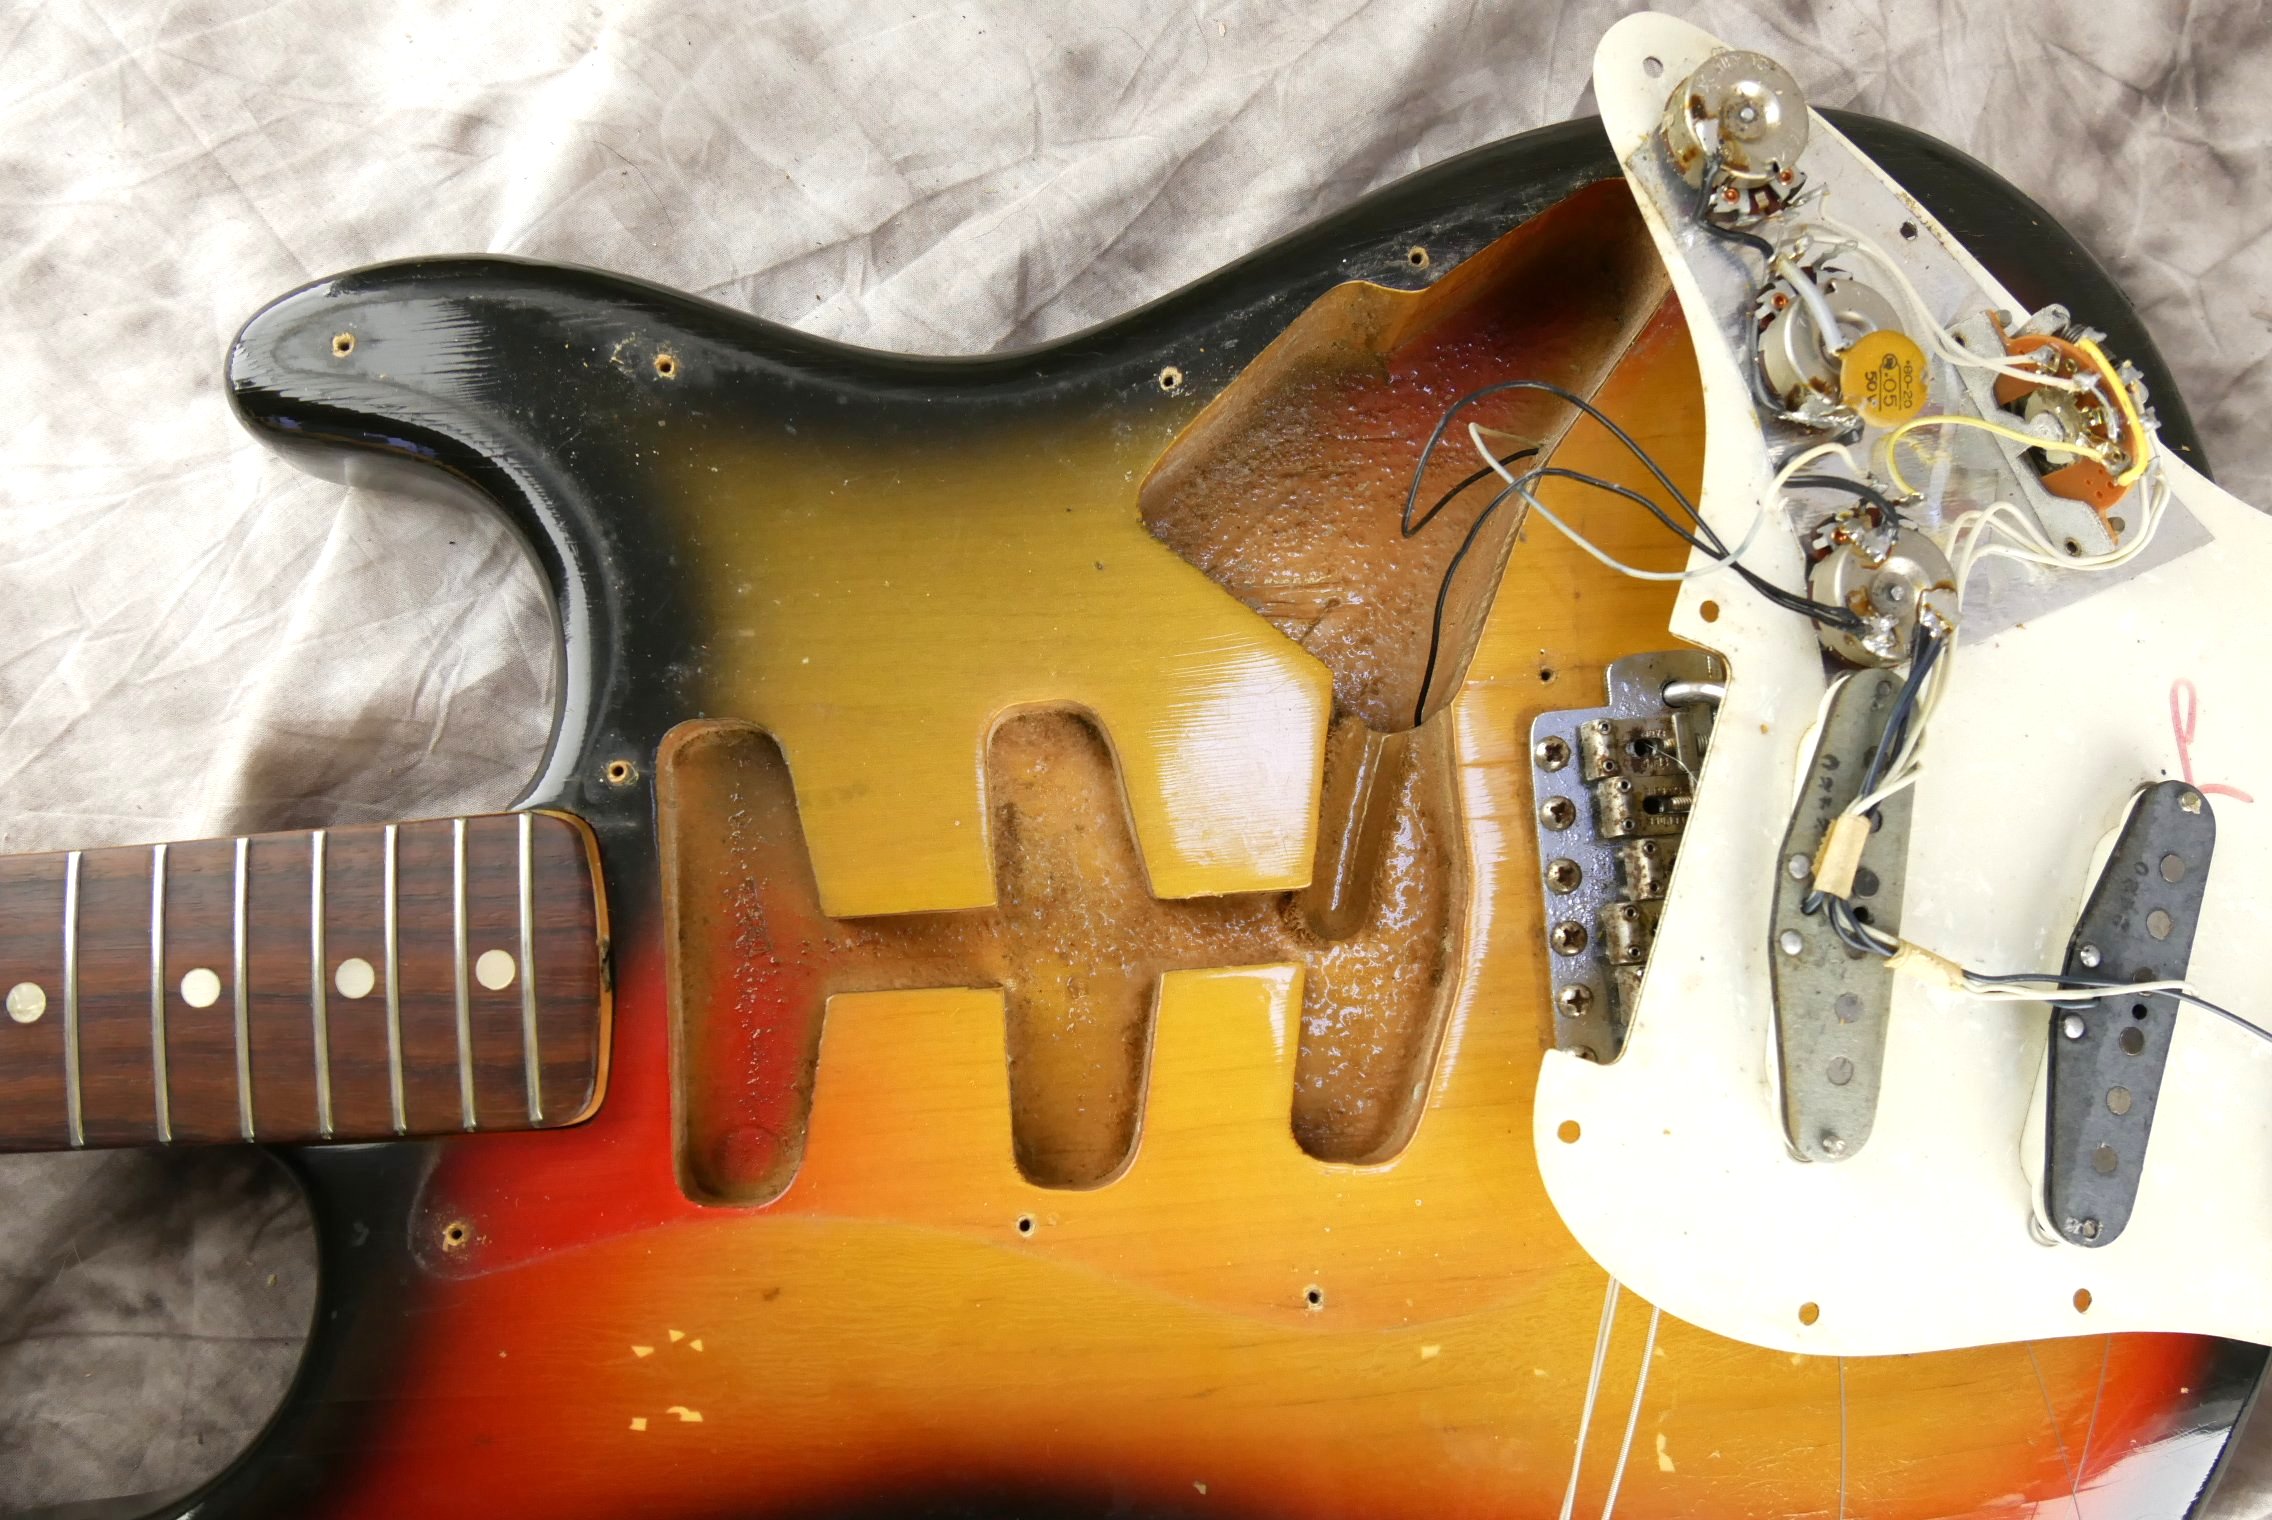 Fender_Stratocaster-1970_sunburst-tremolo-018.JPG